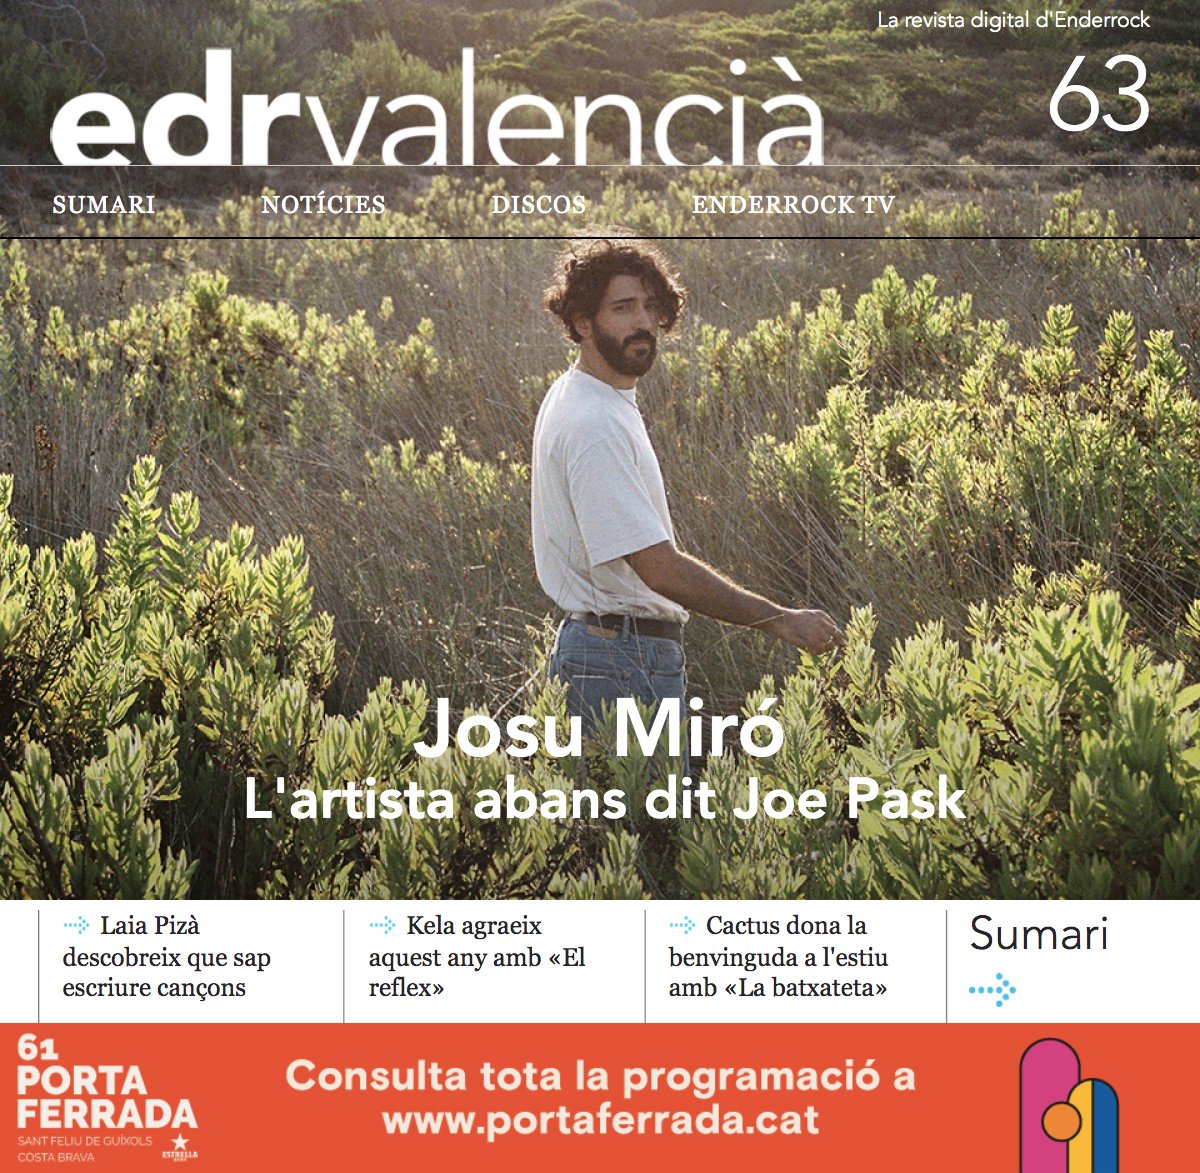 Ja tenim aquí l'EDR Valencià #63 amb ✨@josumiro✨ i el seu nou projecte en portada! També repassa continguts sobre:

➡@LaiaPiza 
➡@unatalkela 
➡@cactustroop 
➡#GentdelDesert
➡@FiraTroVAM

👇Tot teu!👇
enderrock.cat/edrvalencia/nu…